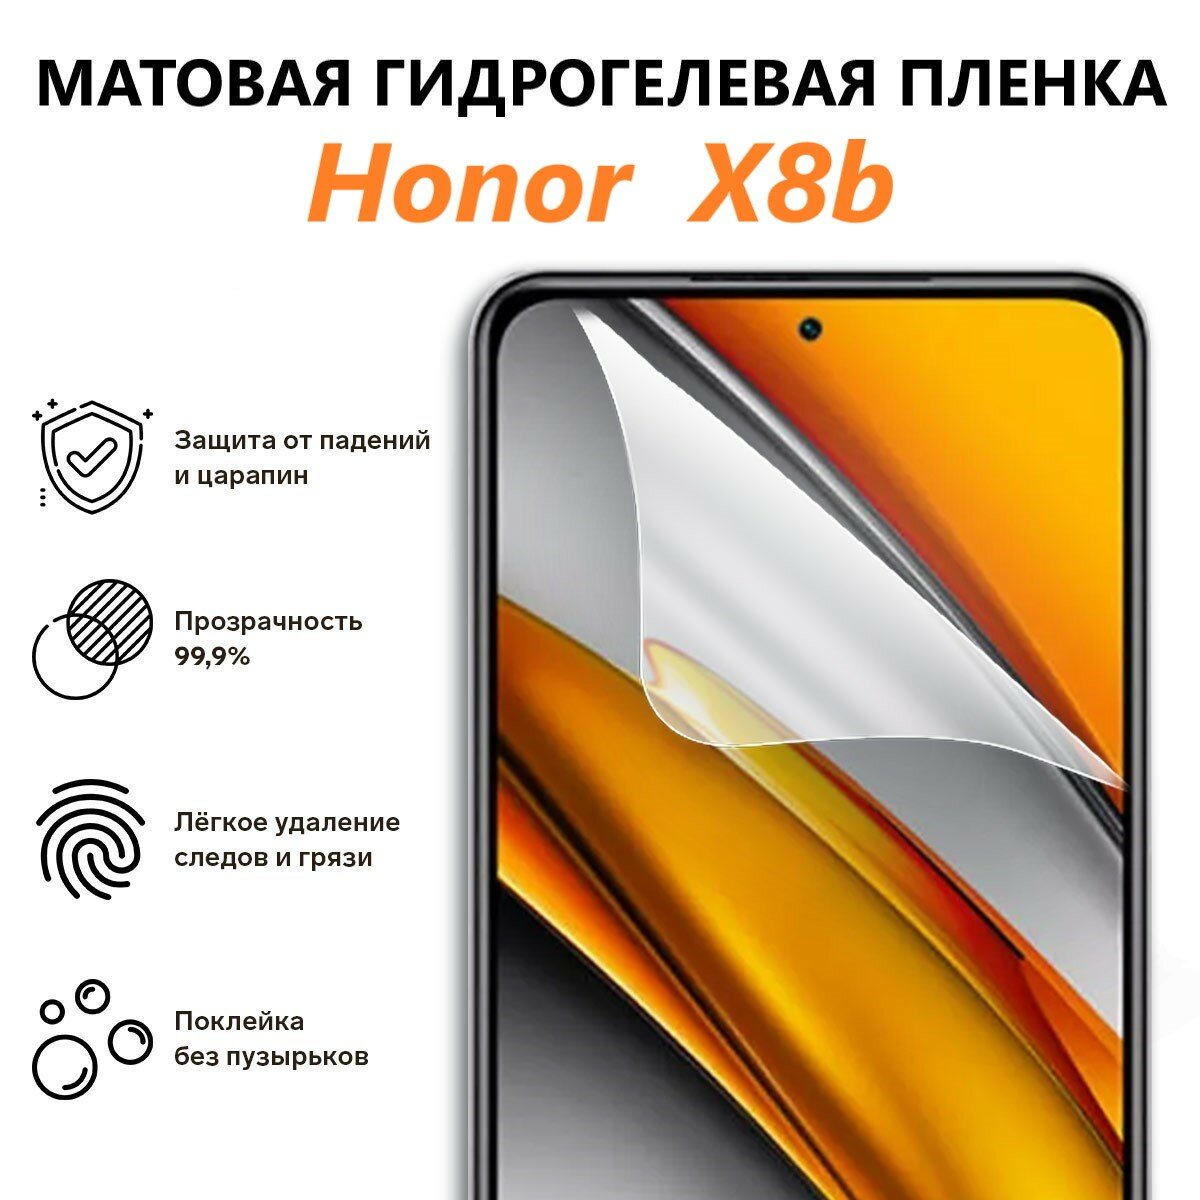 Матовая гидрогелевая пленка для Honor X8b / Полноэкранная защита телефона